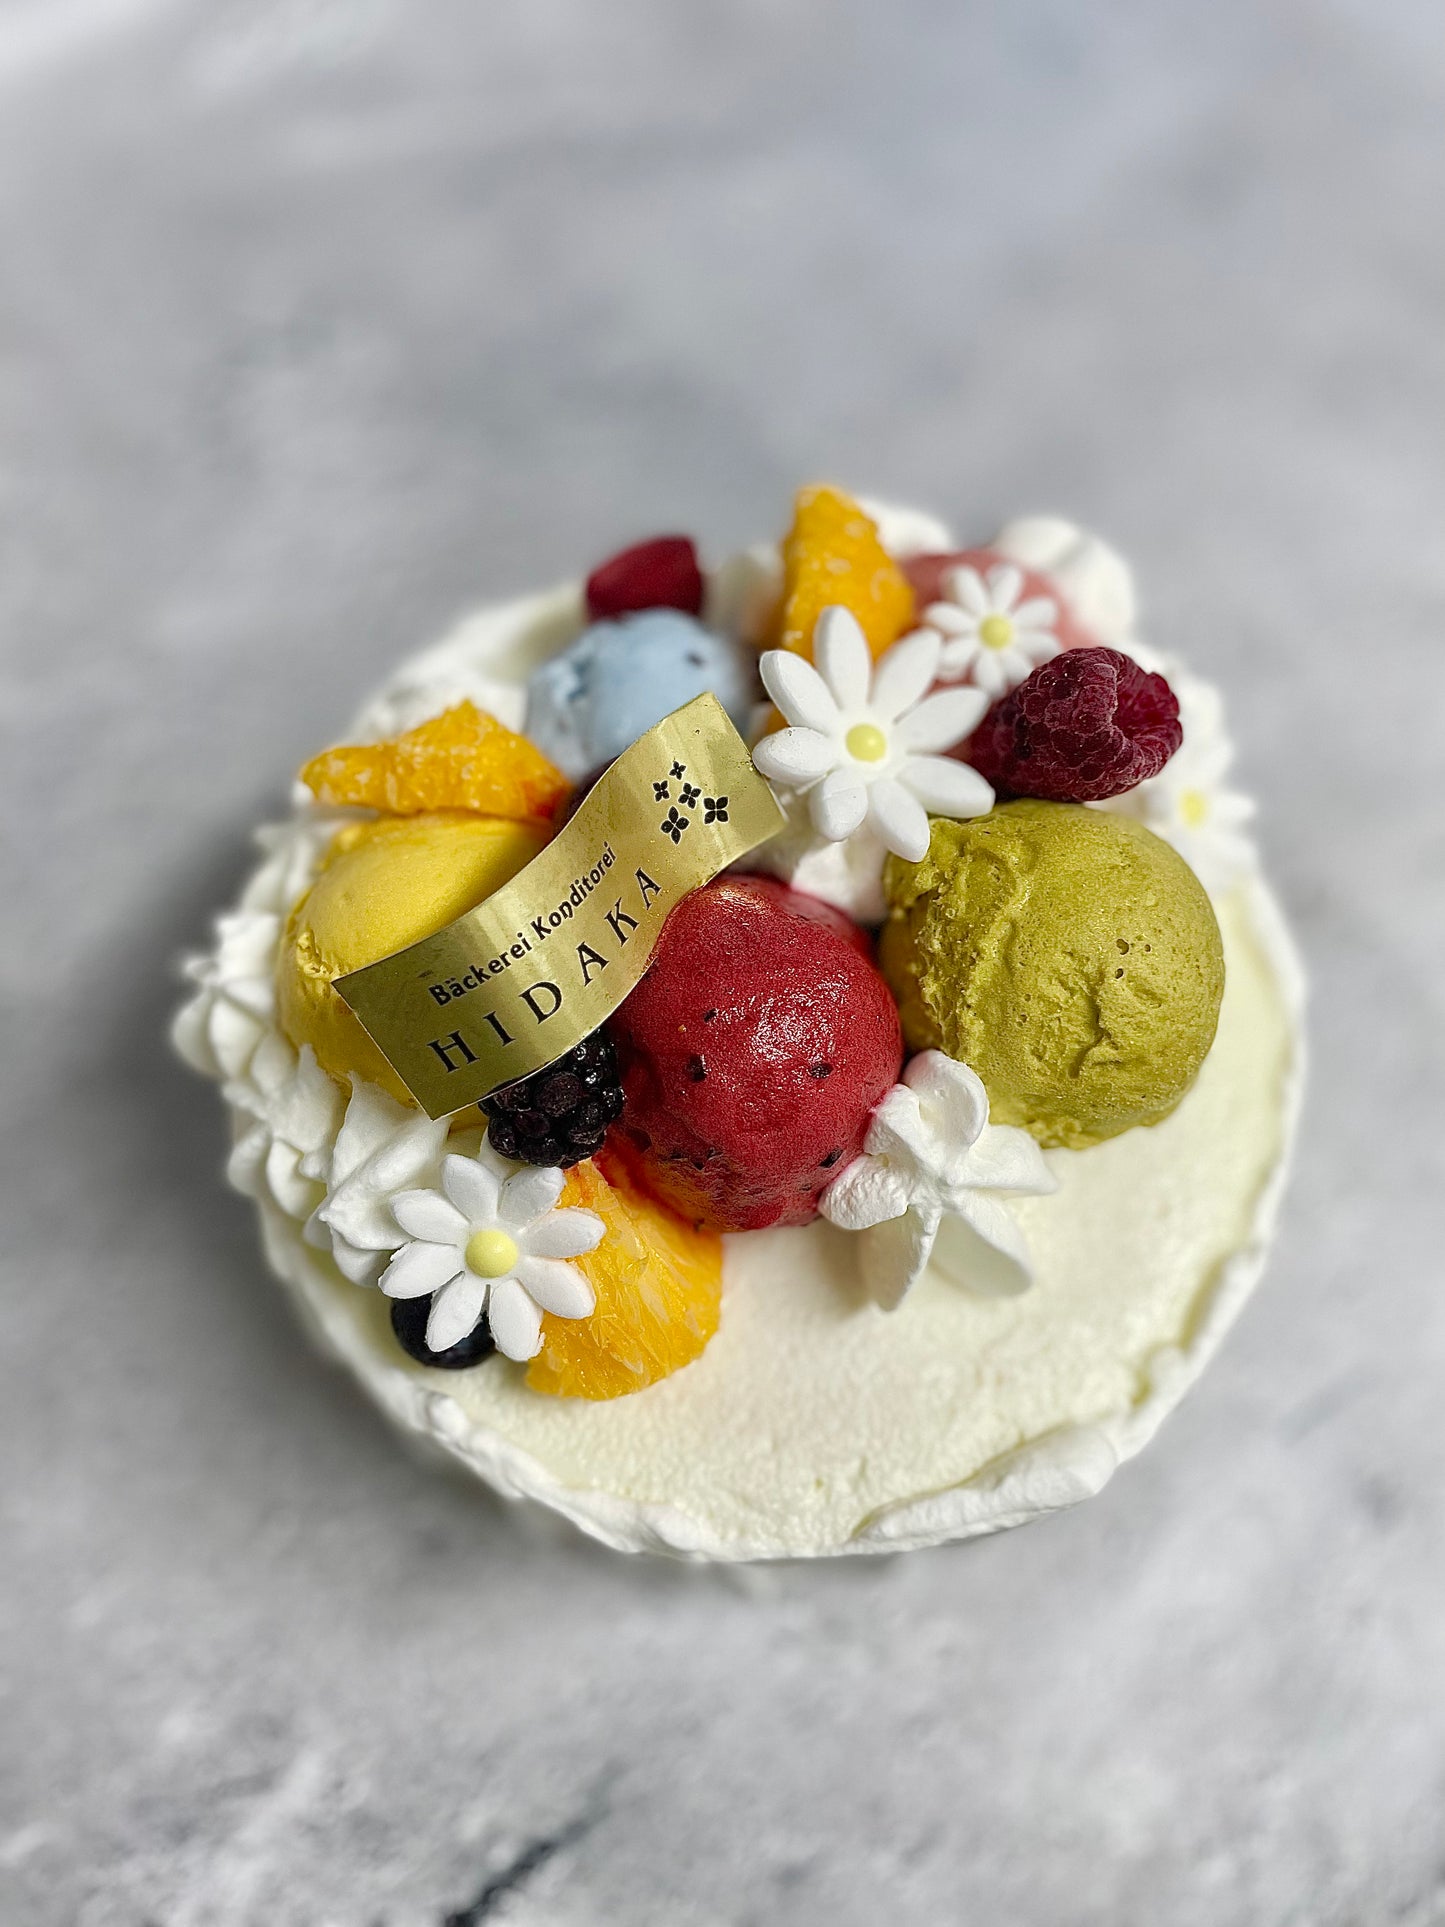 【冷凍発送】HIDAKAのオーダージェラートケーキ「木次ミルクのアイスケーキ」